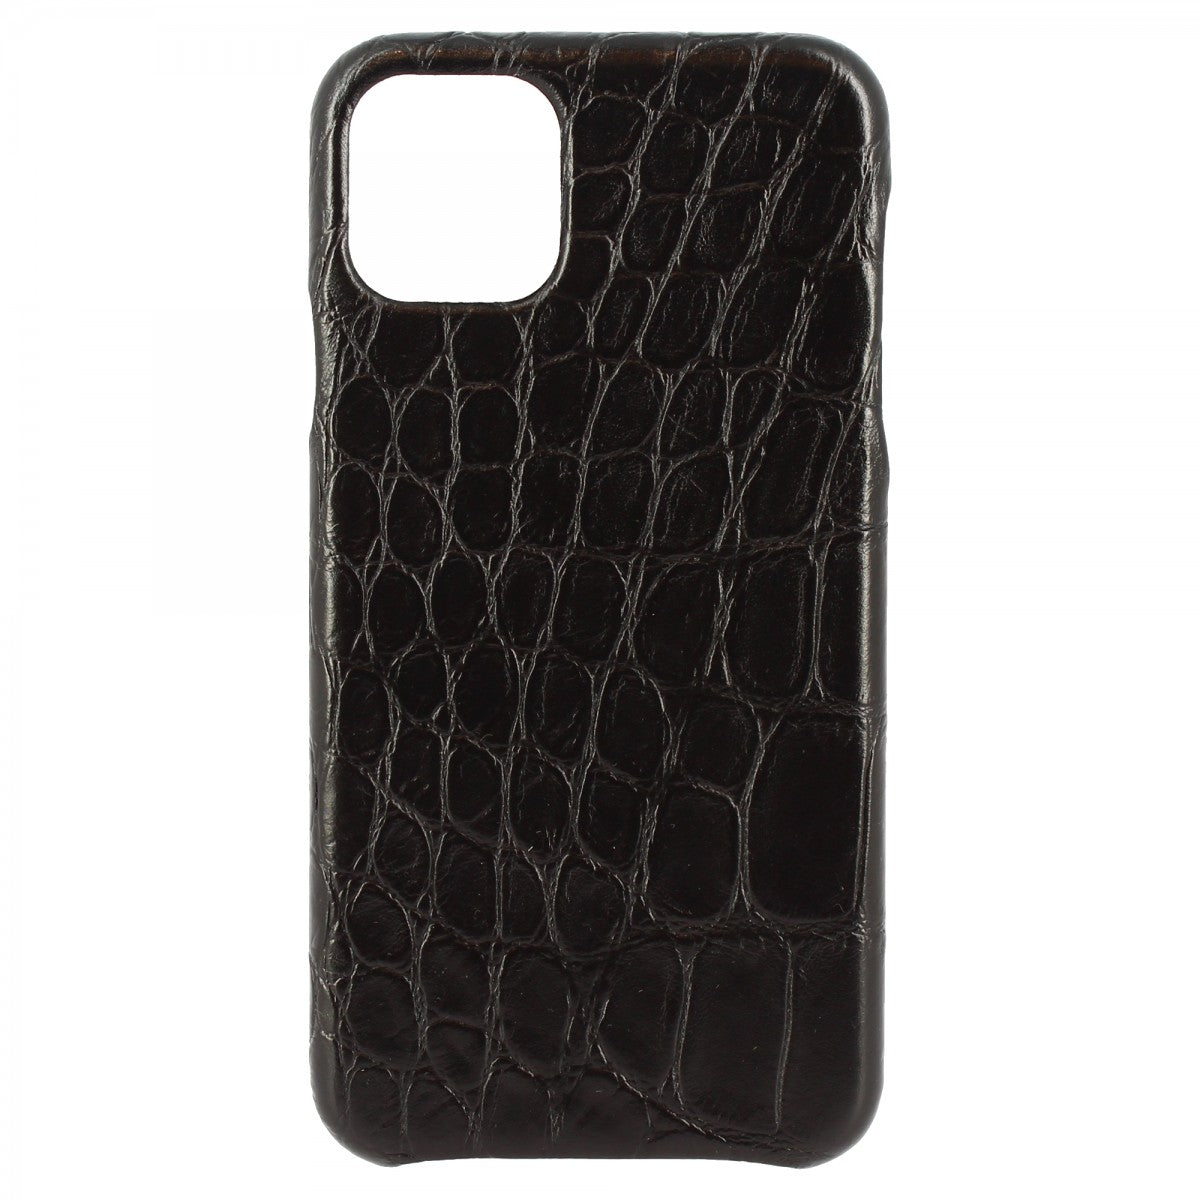 Cover iPhone in pelle stampata coccodrillo nero